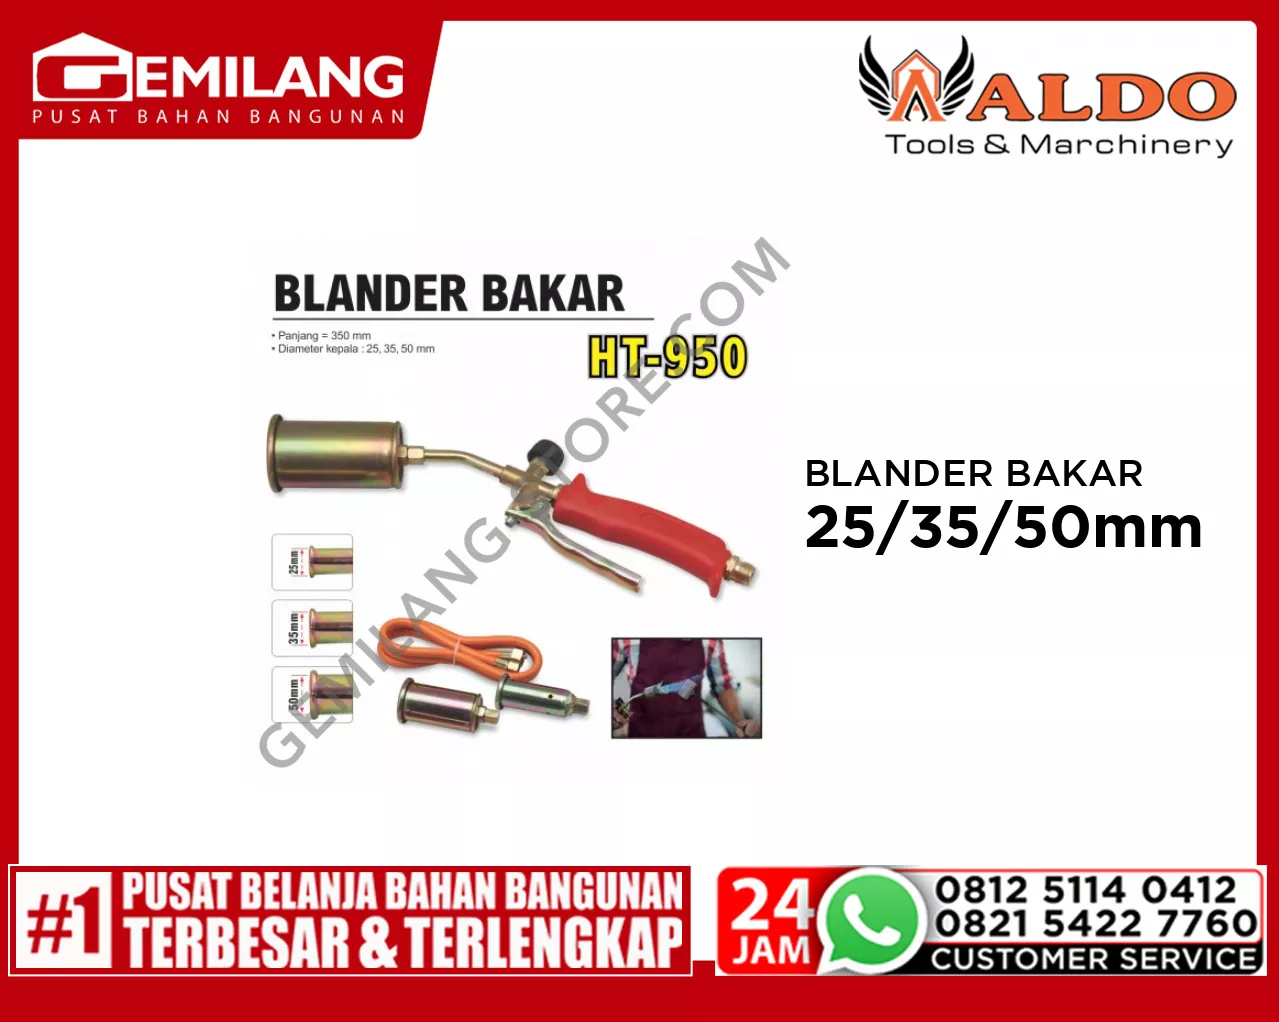 ALDO BLANDER BAKAR 950 25/35/50mm